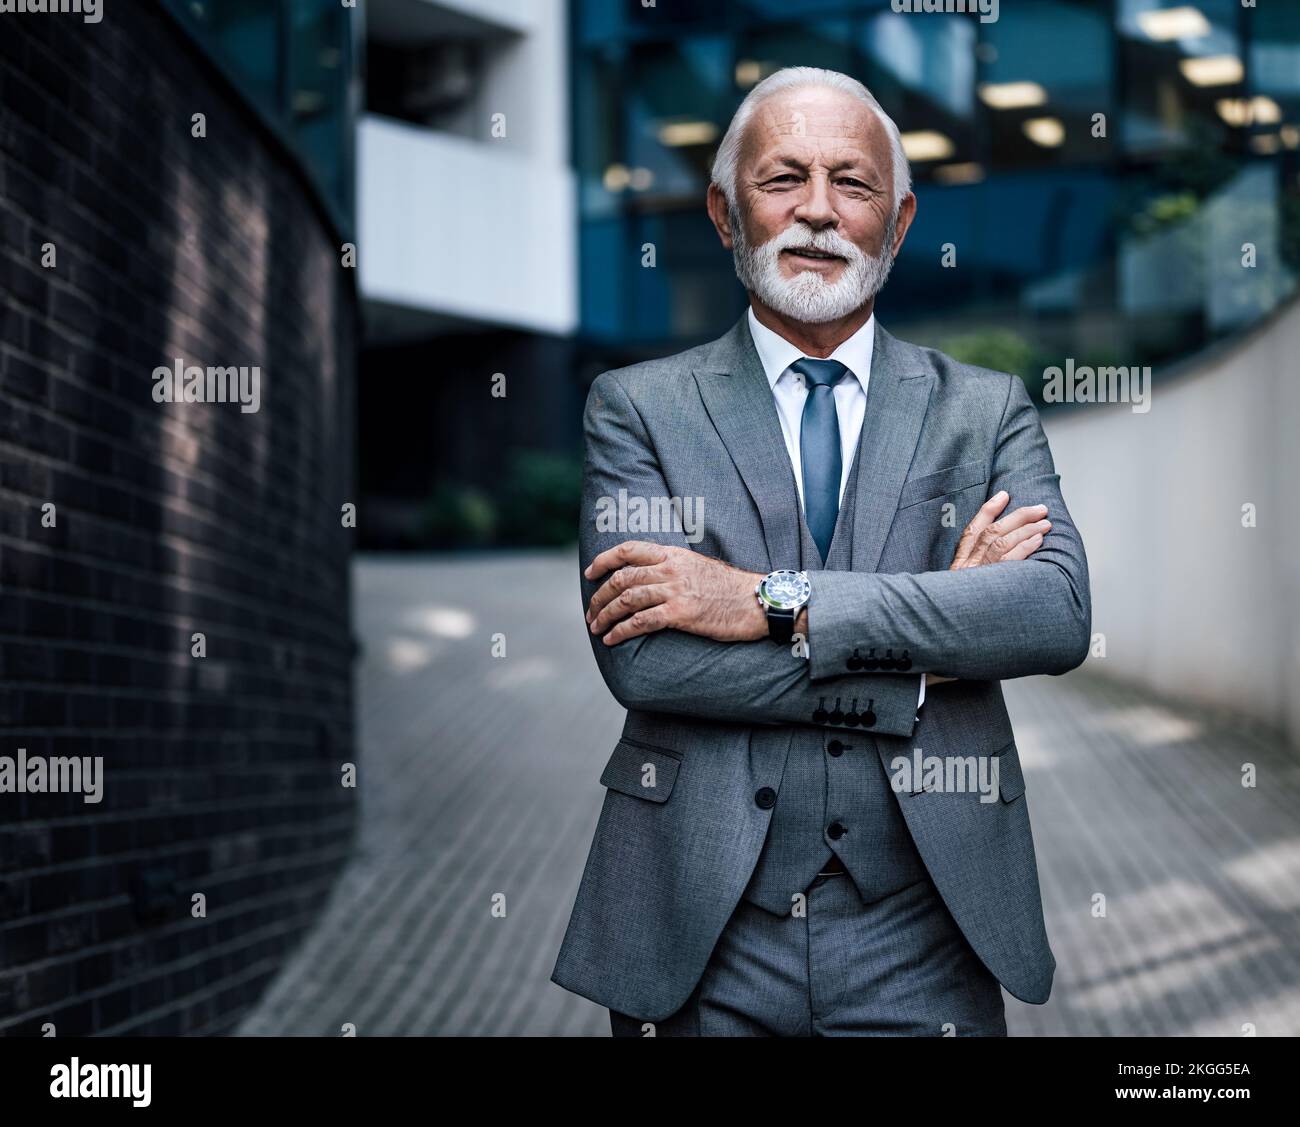 Portrait d'entrepreneur âgé confiant avec les bras croisés. Un homme d'affaires souriant se trouve sur une passerelle piétonne à l'extérieur d'un immeuble de bureaux moderne Banque D'Images